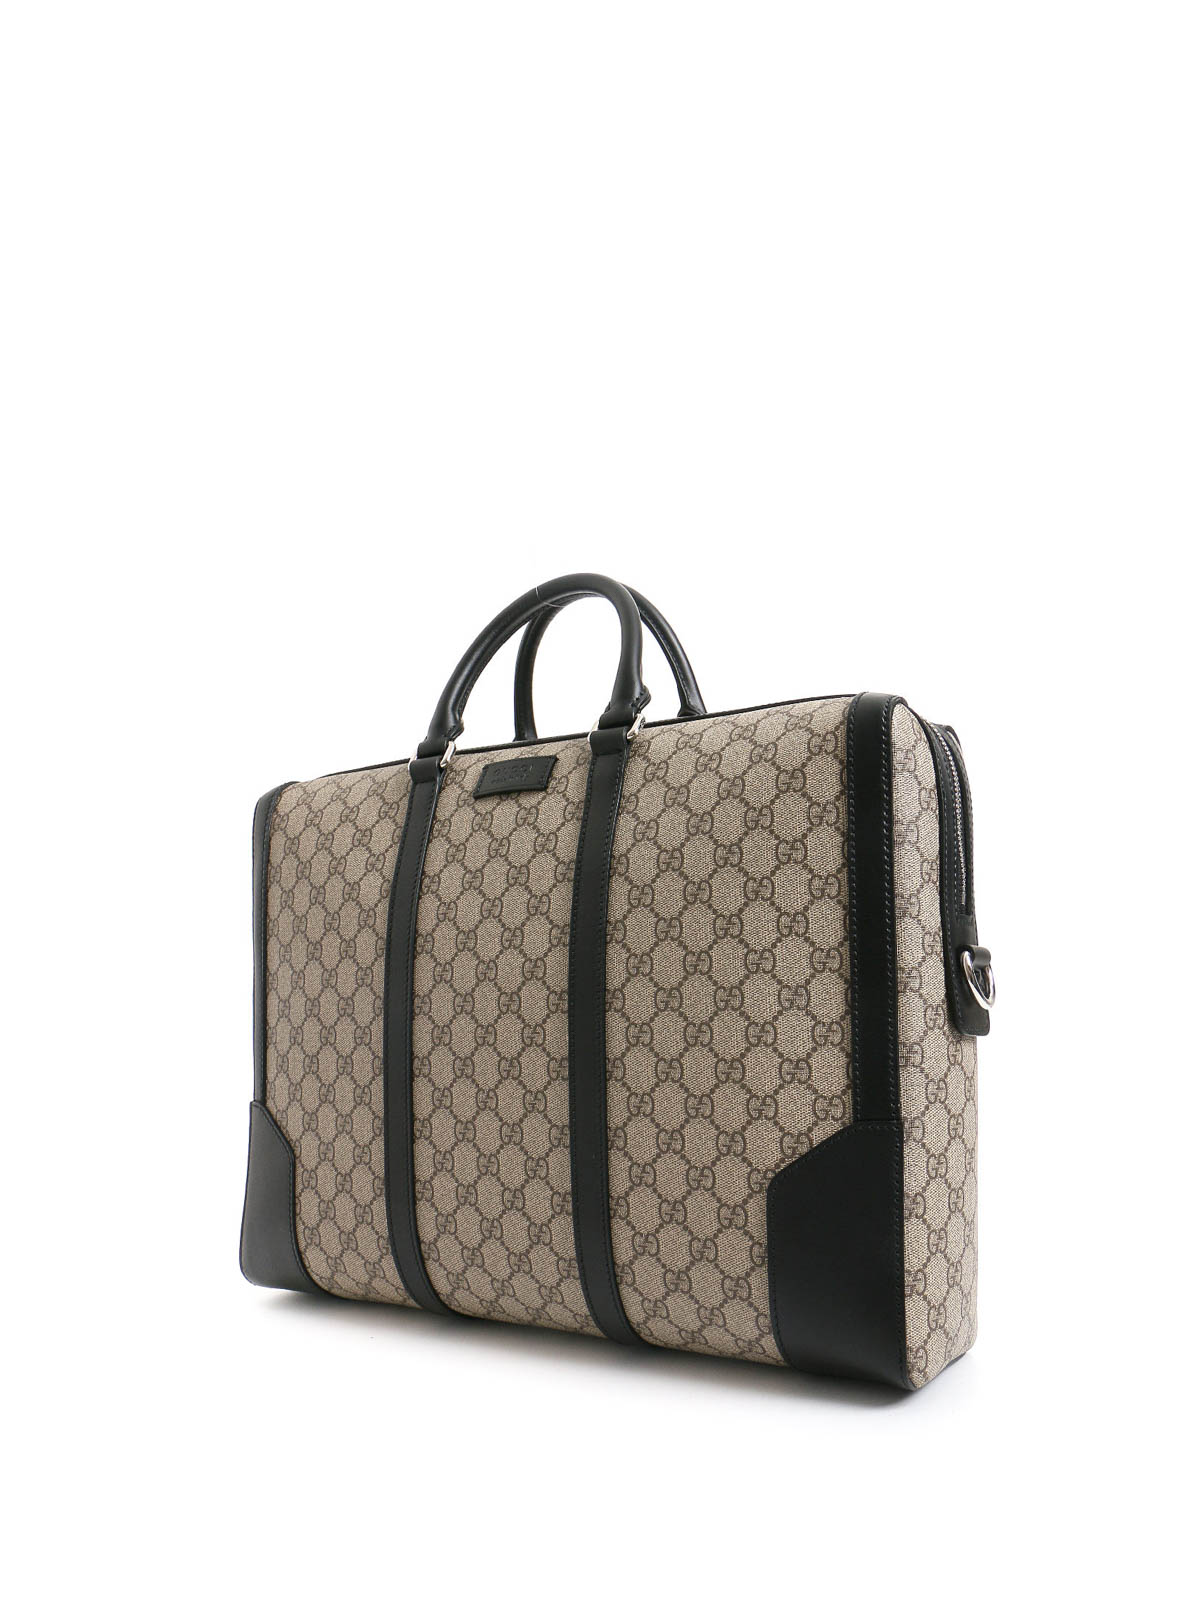 Gucci GG Black Briefcase